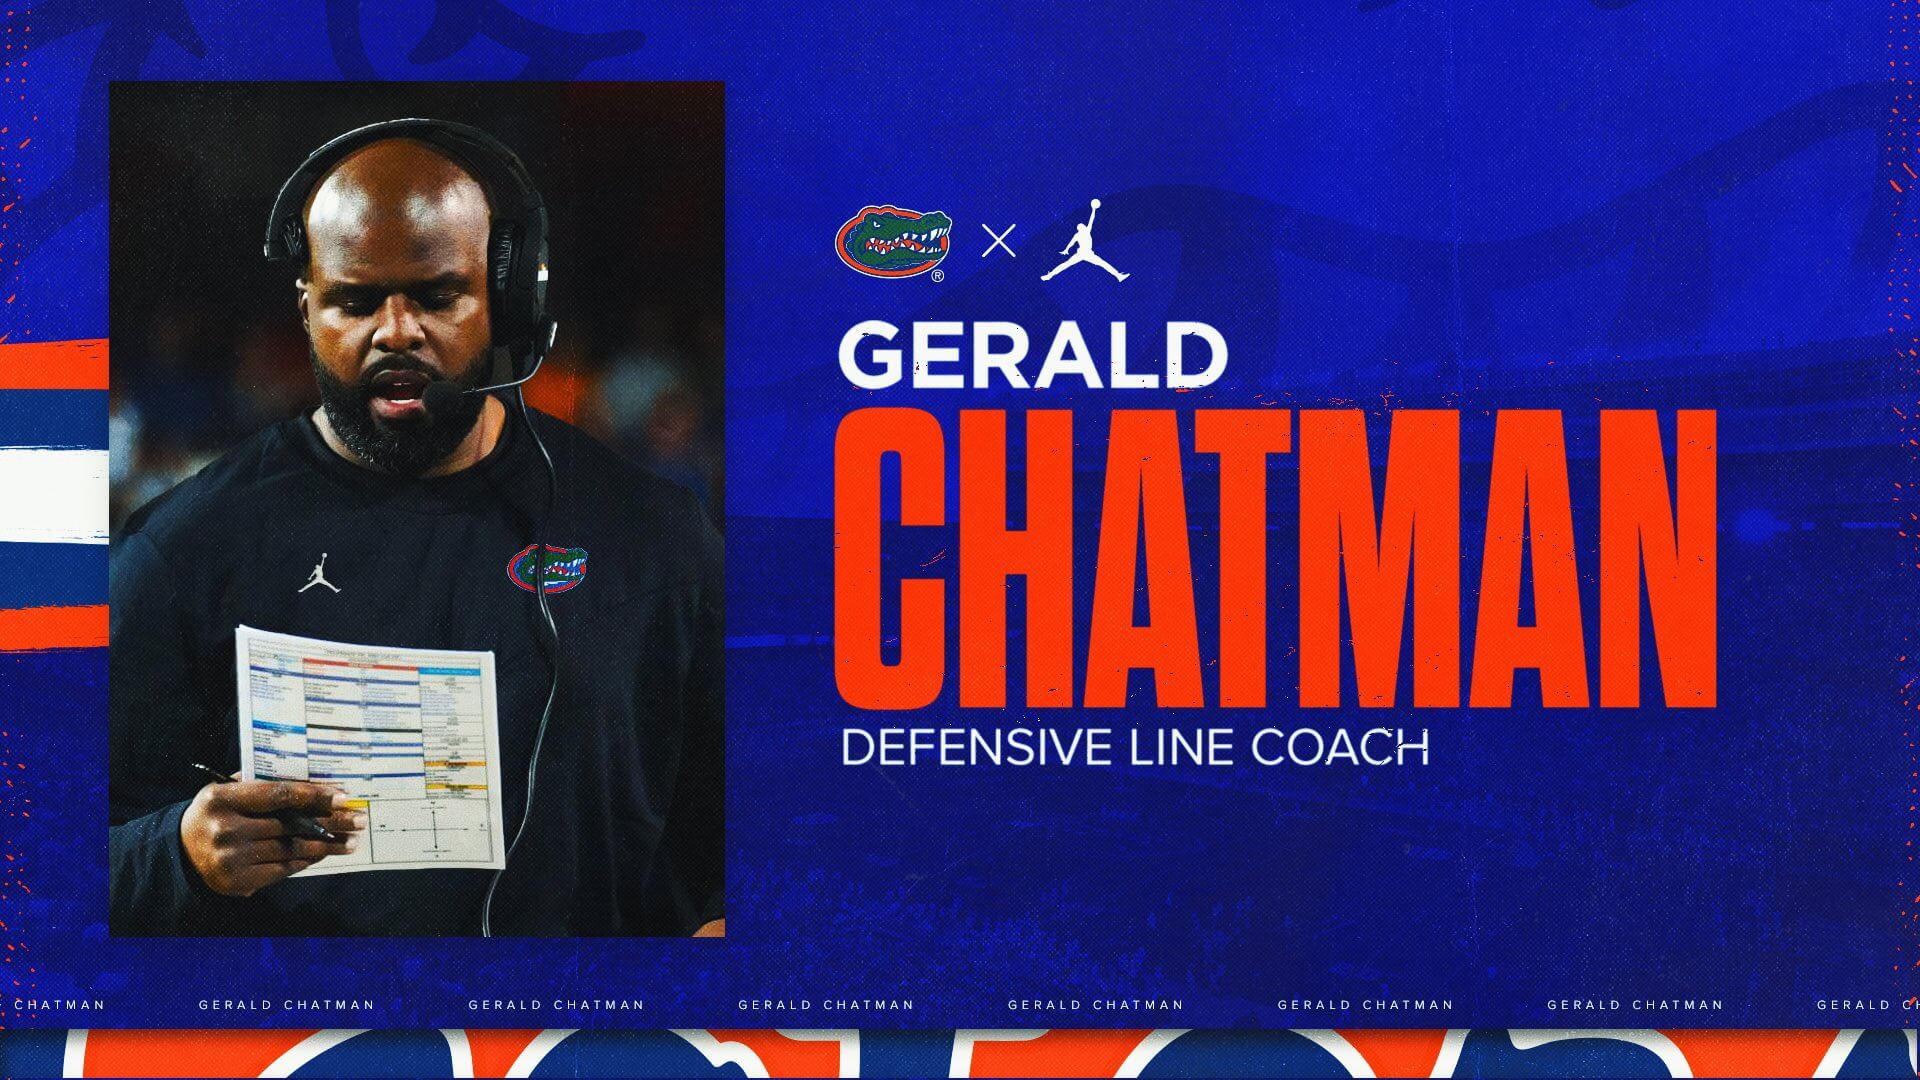 Florida hires Gerald Chatman